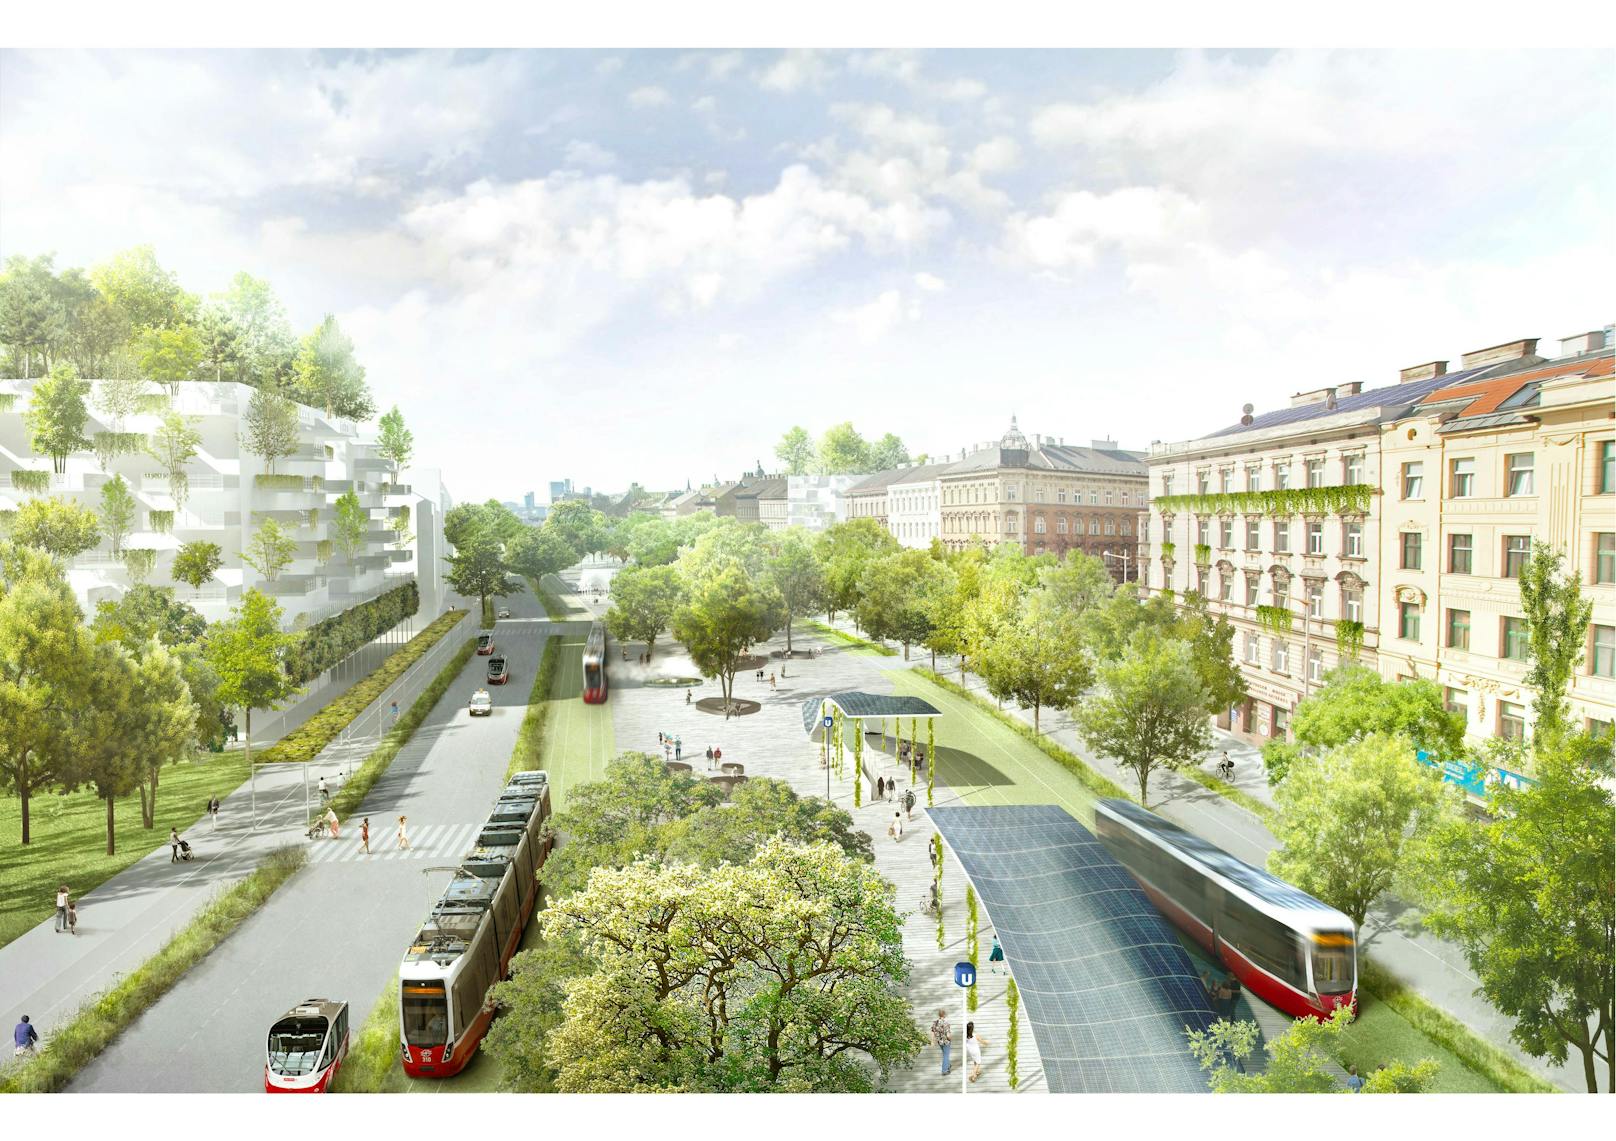 So grün soll Wien nach Plänen der Wiener Linien sein: Parkplätze machen Platz für Parkbänke und besserer Klimaschutz durch den Umstieg auf die Öffis.